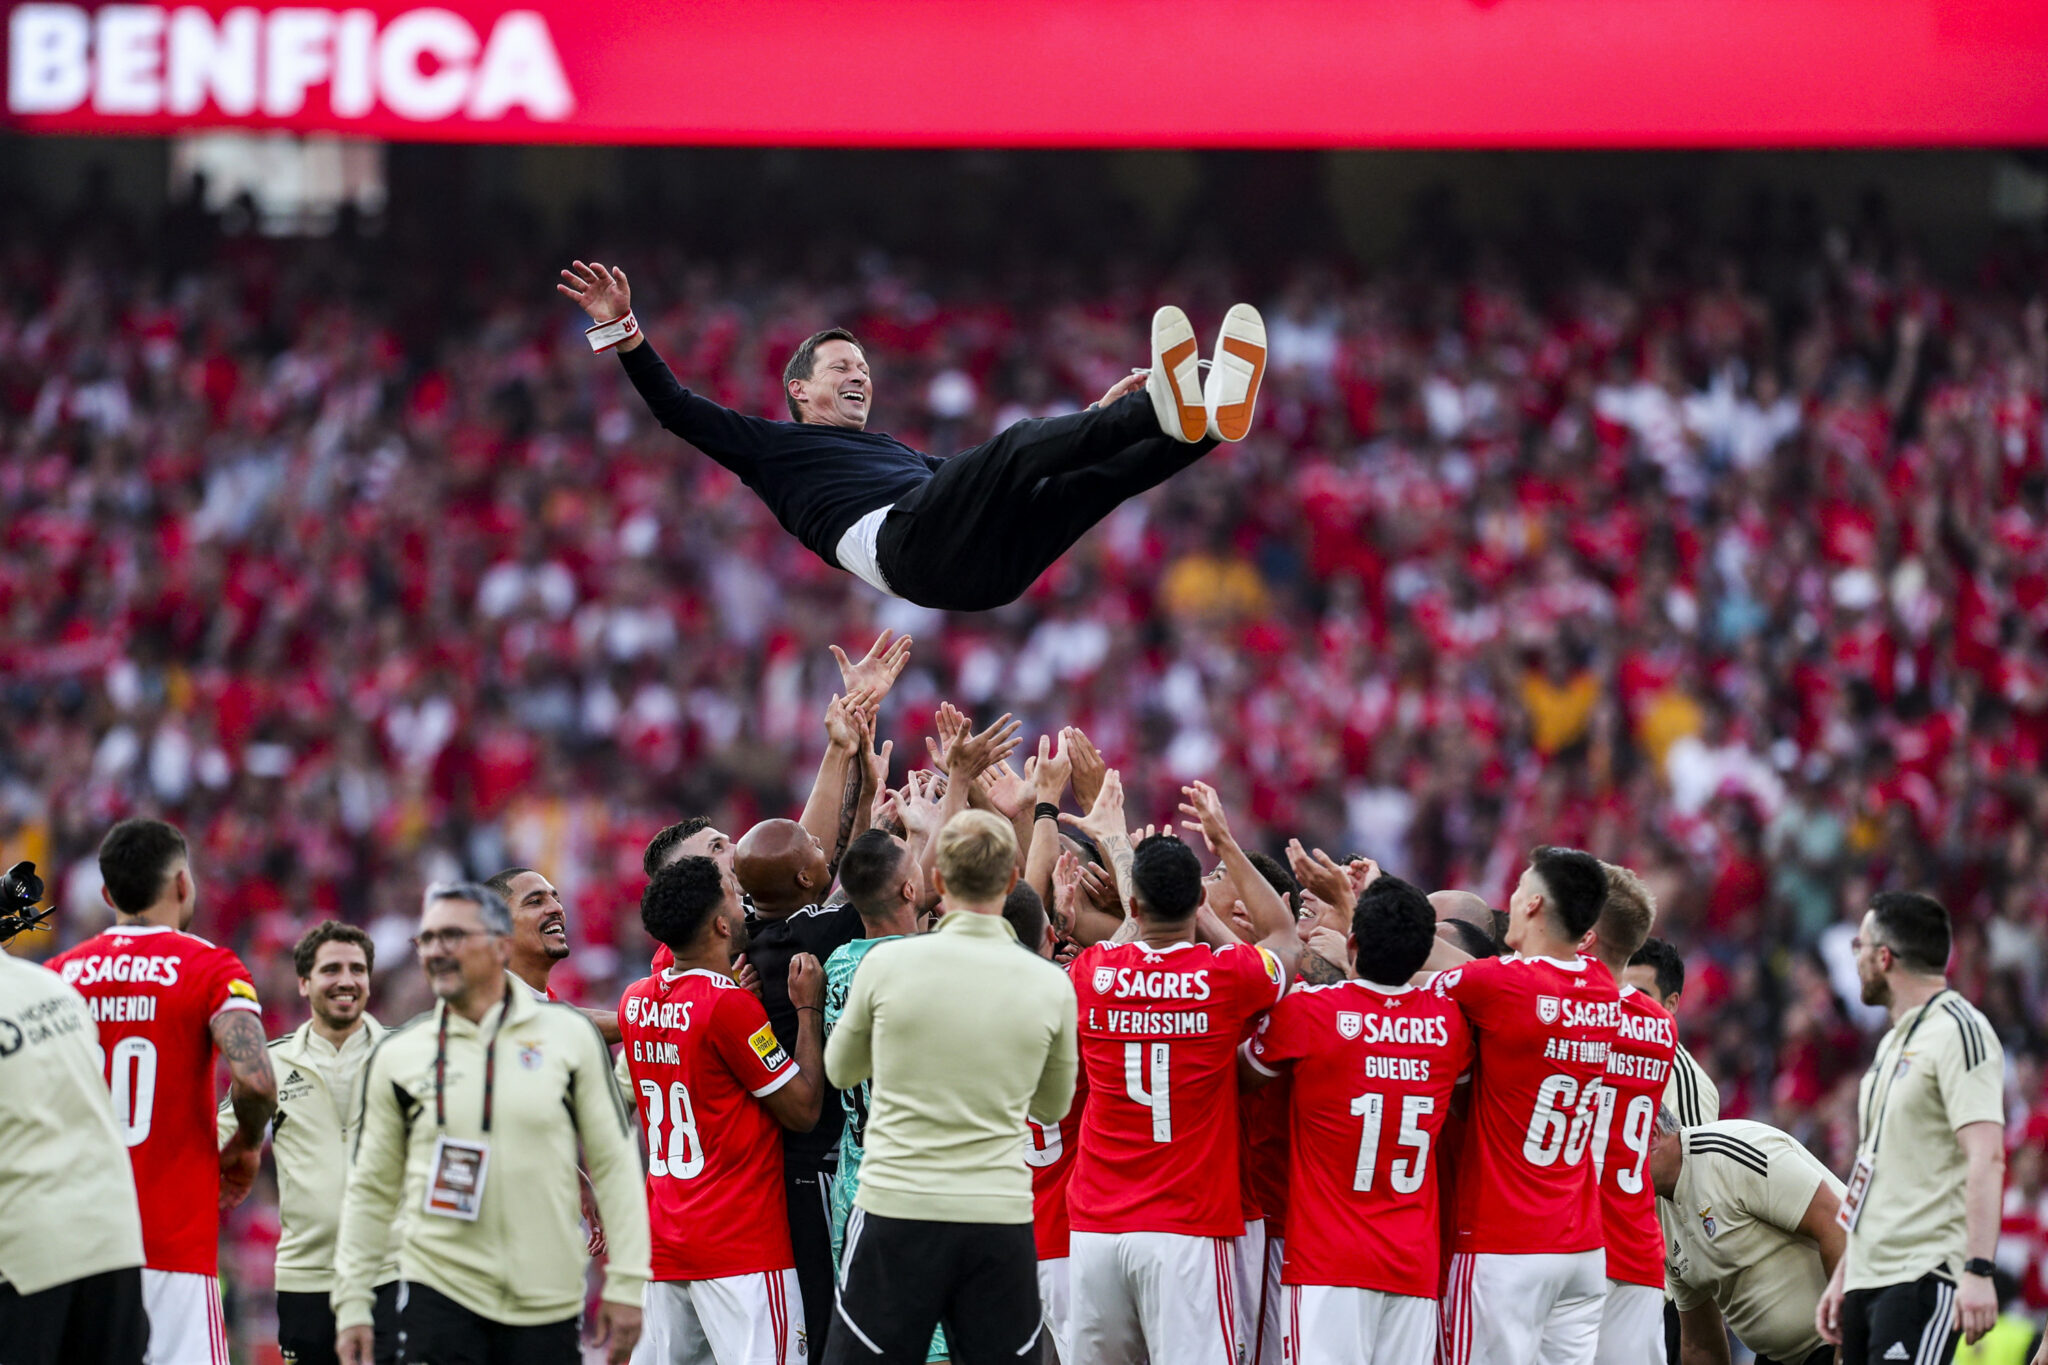 Schmidt festeggia la vittoria della Liga Portugal